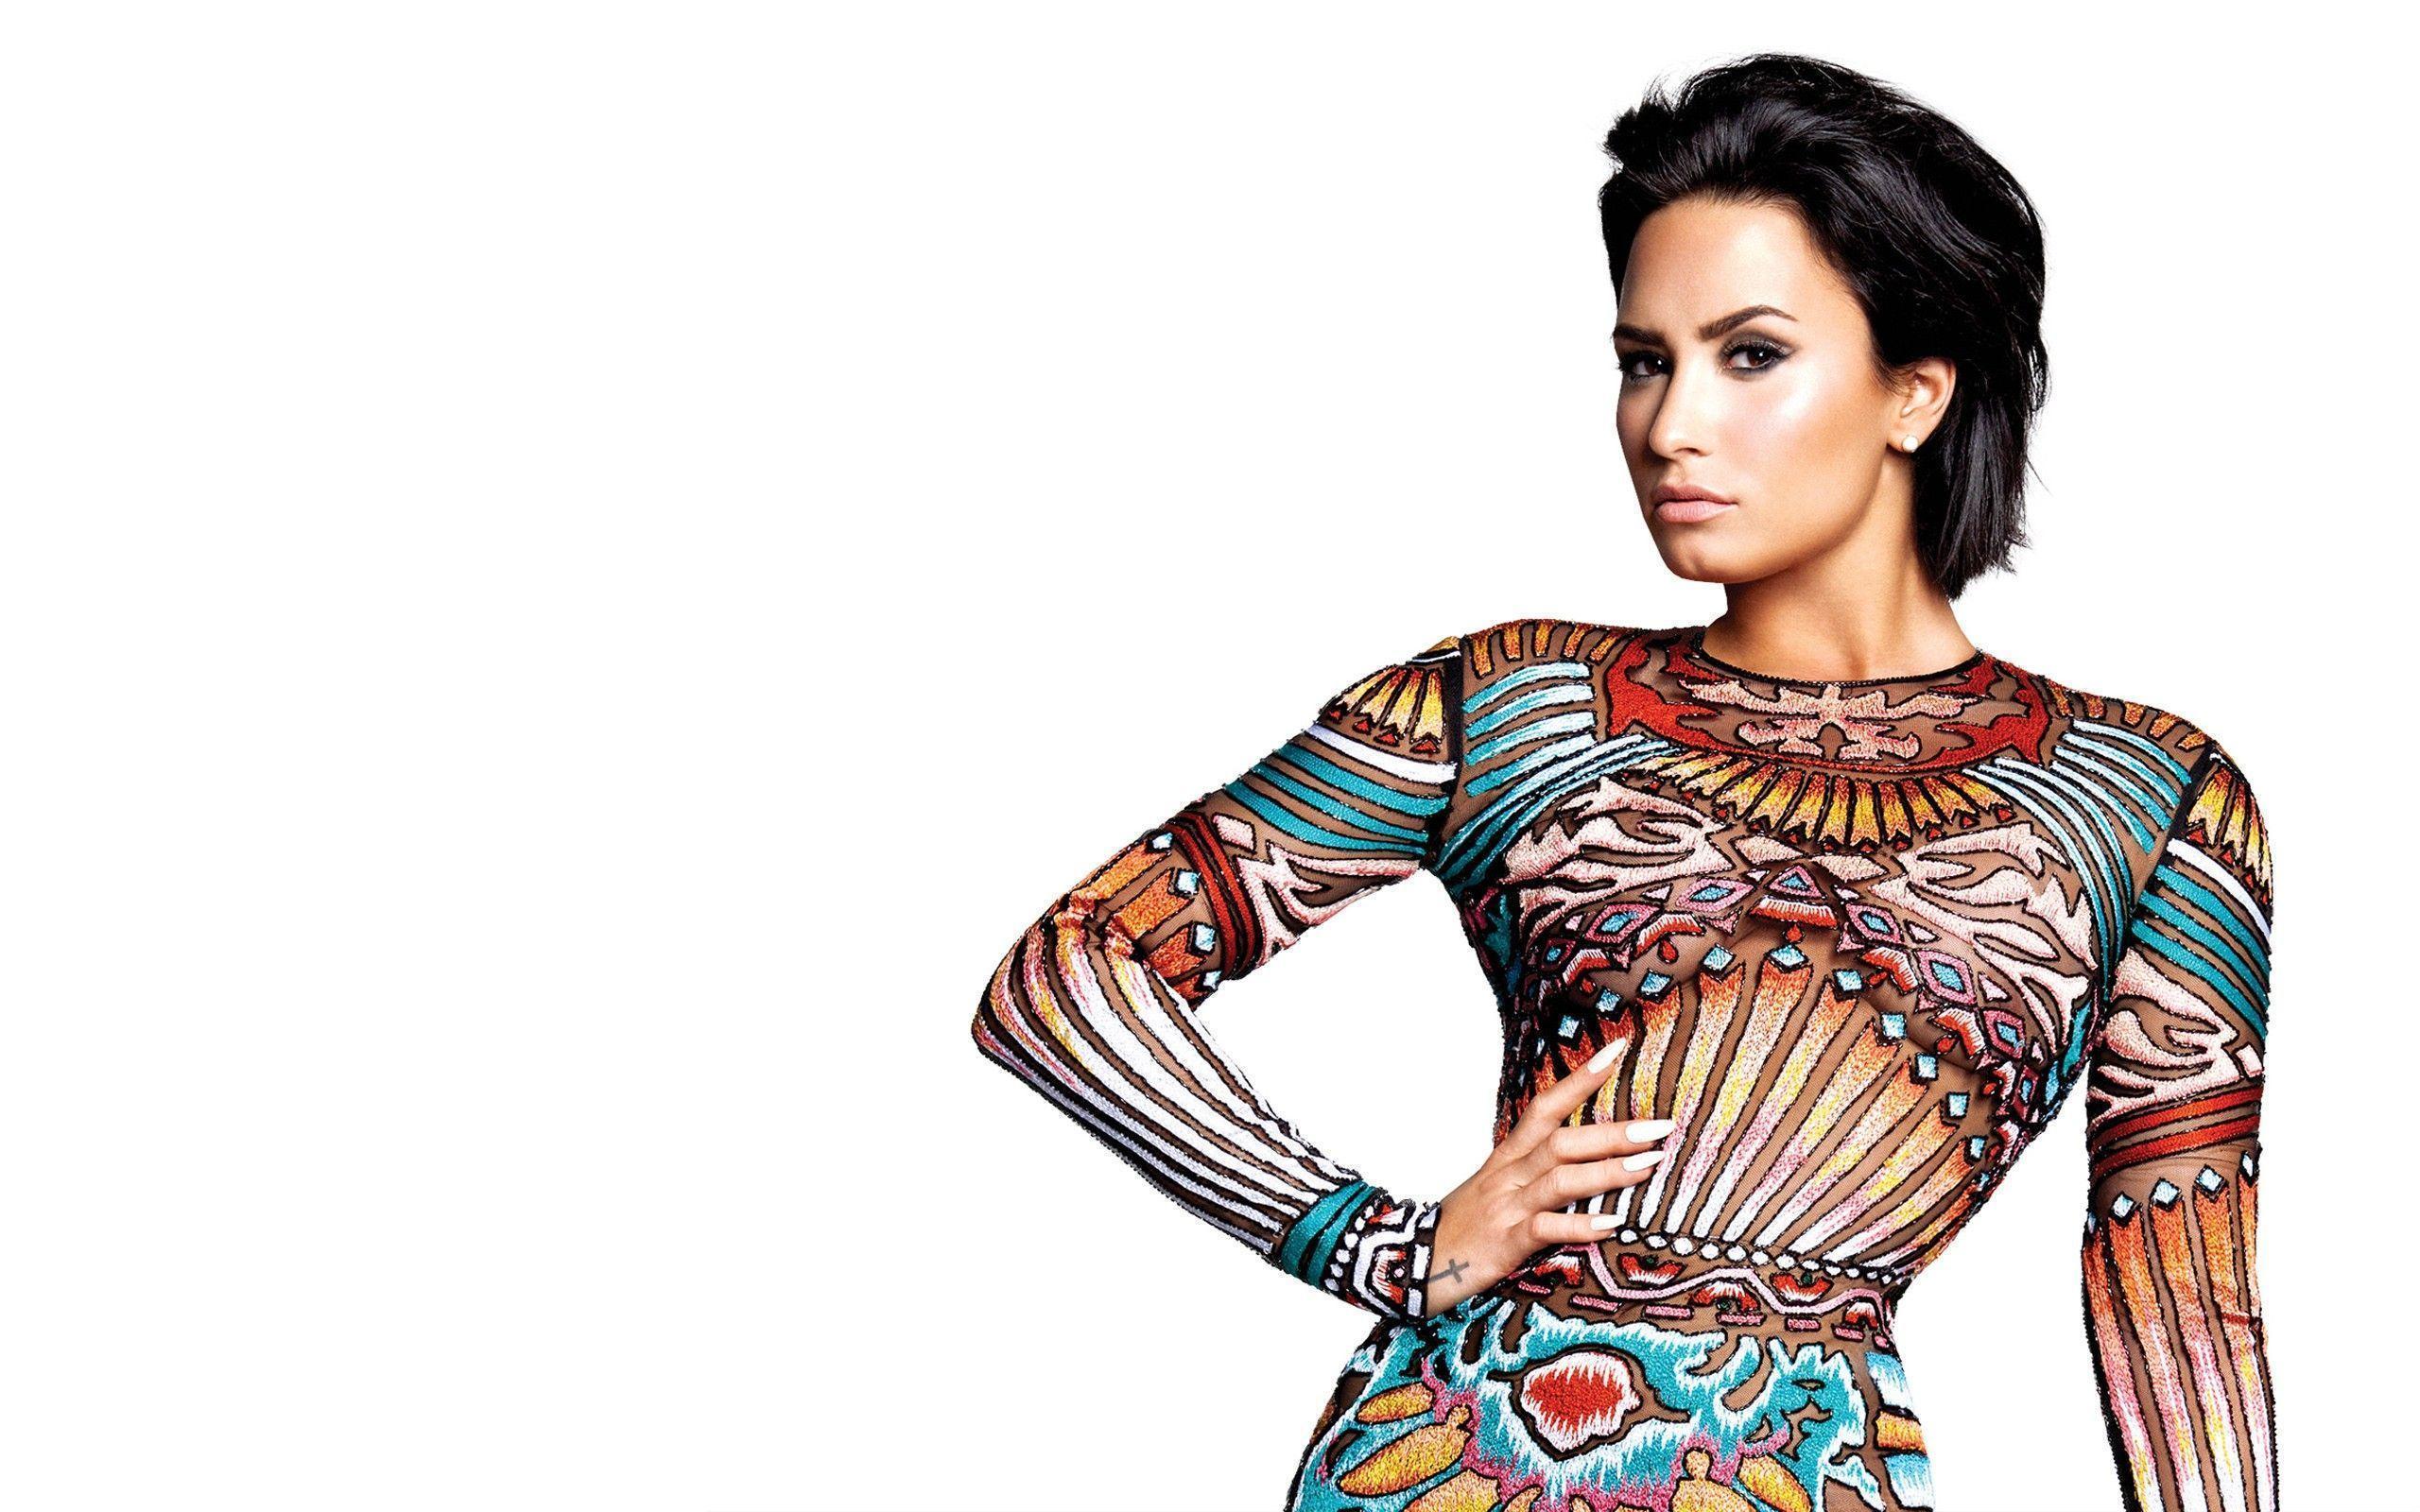 Demi Lovato HD Wallpaper 2015